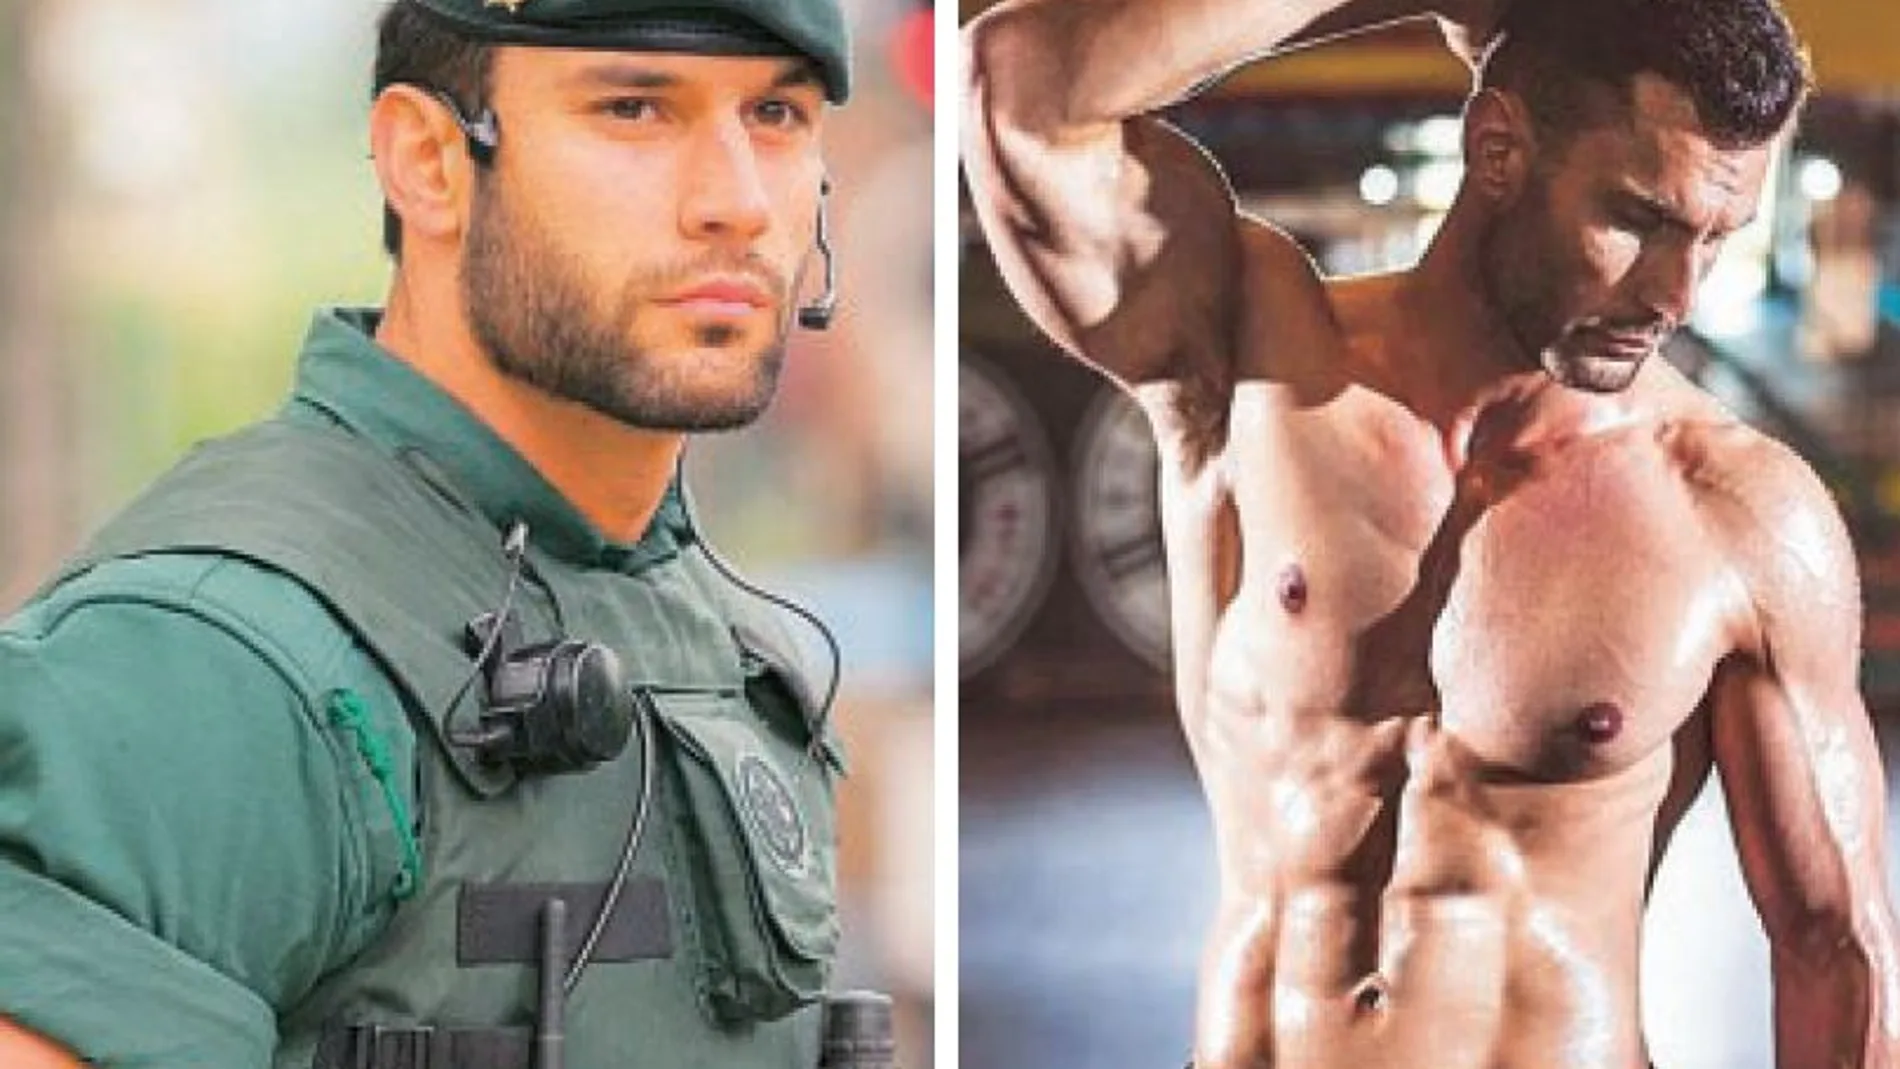 El agente de la Guardia Civil, Jorge Pérez, ha fichado por una prestigiosa agencia de modelos tras una foto viral en Twitter